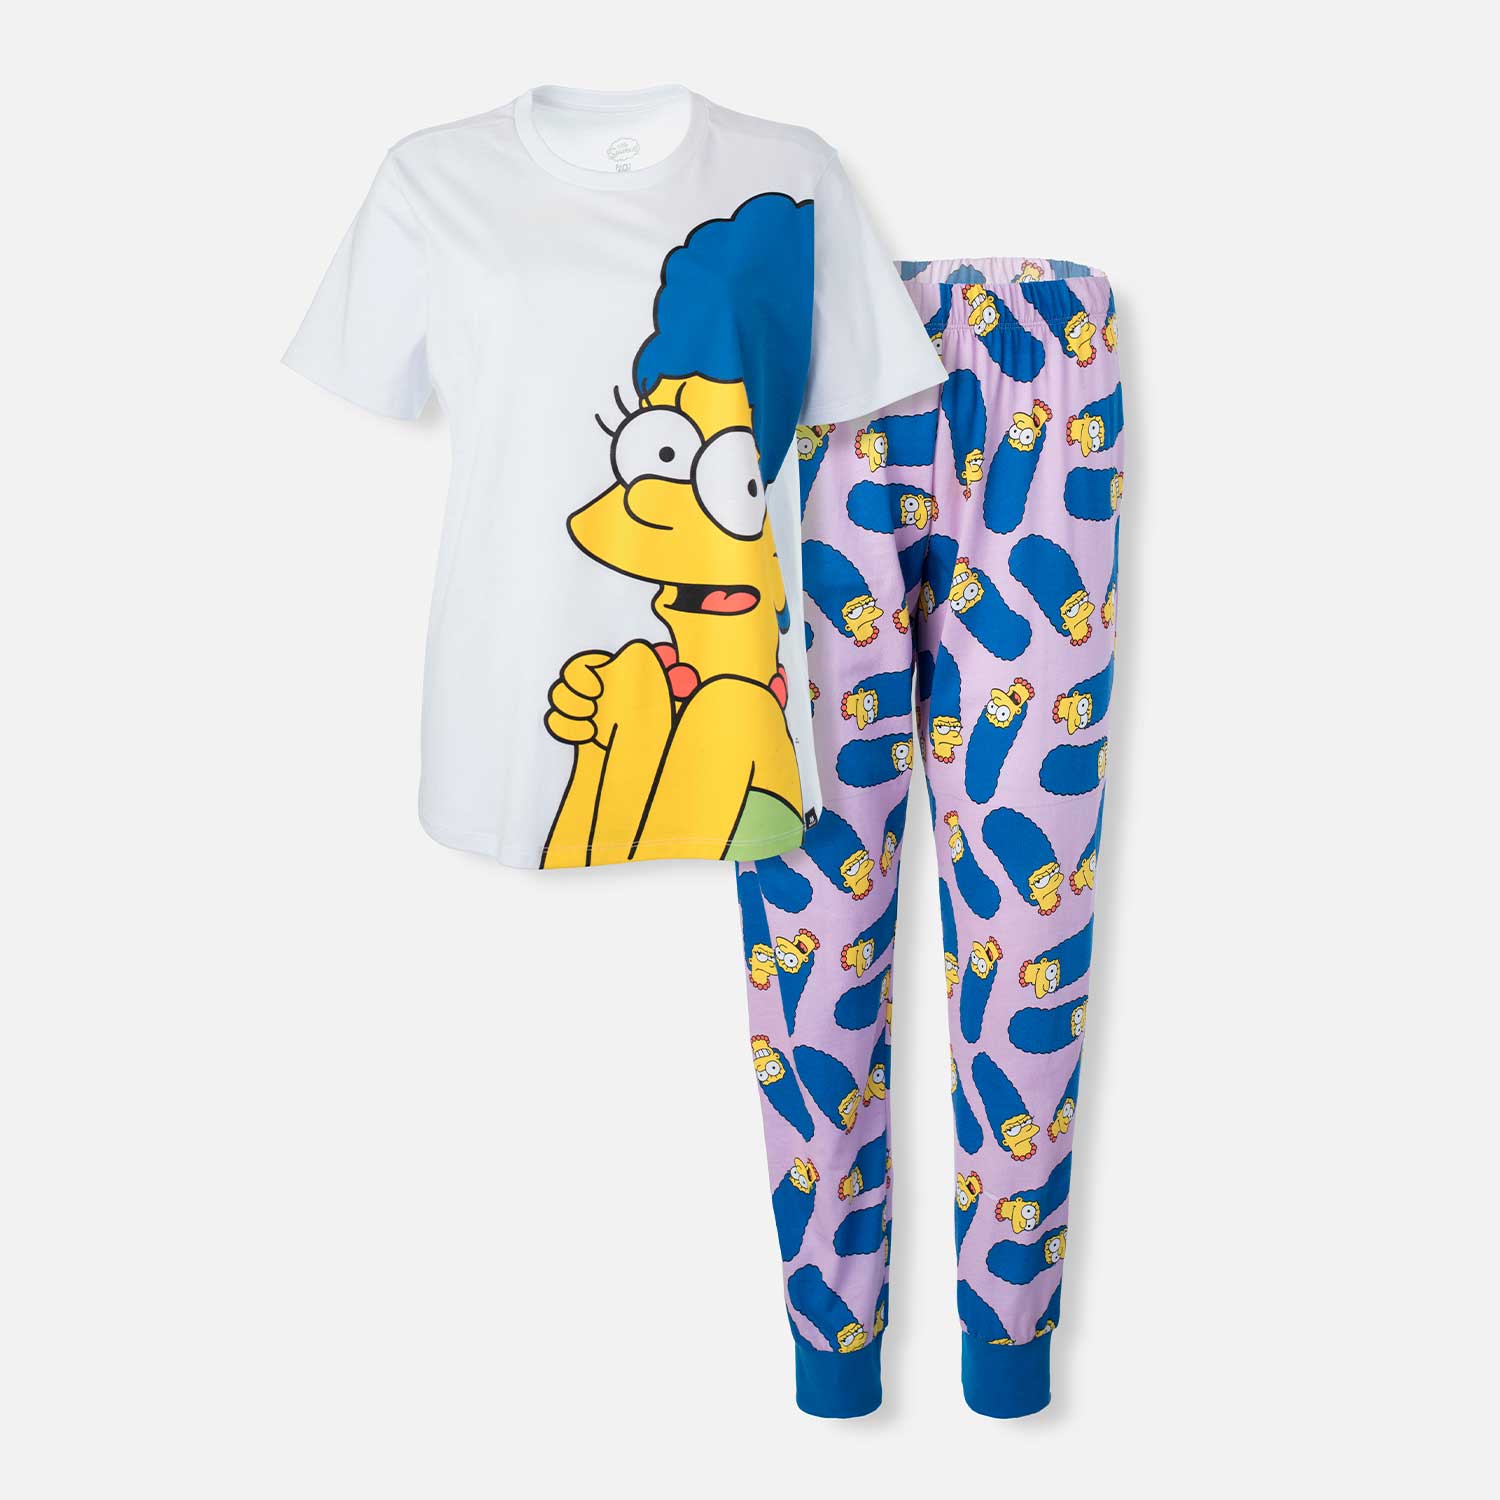 Pijama de Marge Simpson de largo para mujer - MoviesShop | Productos licenciados